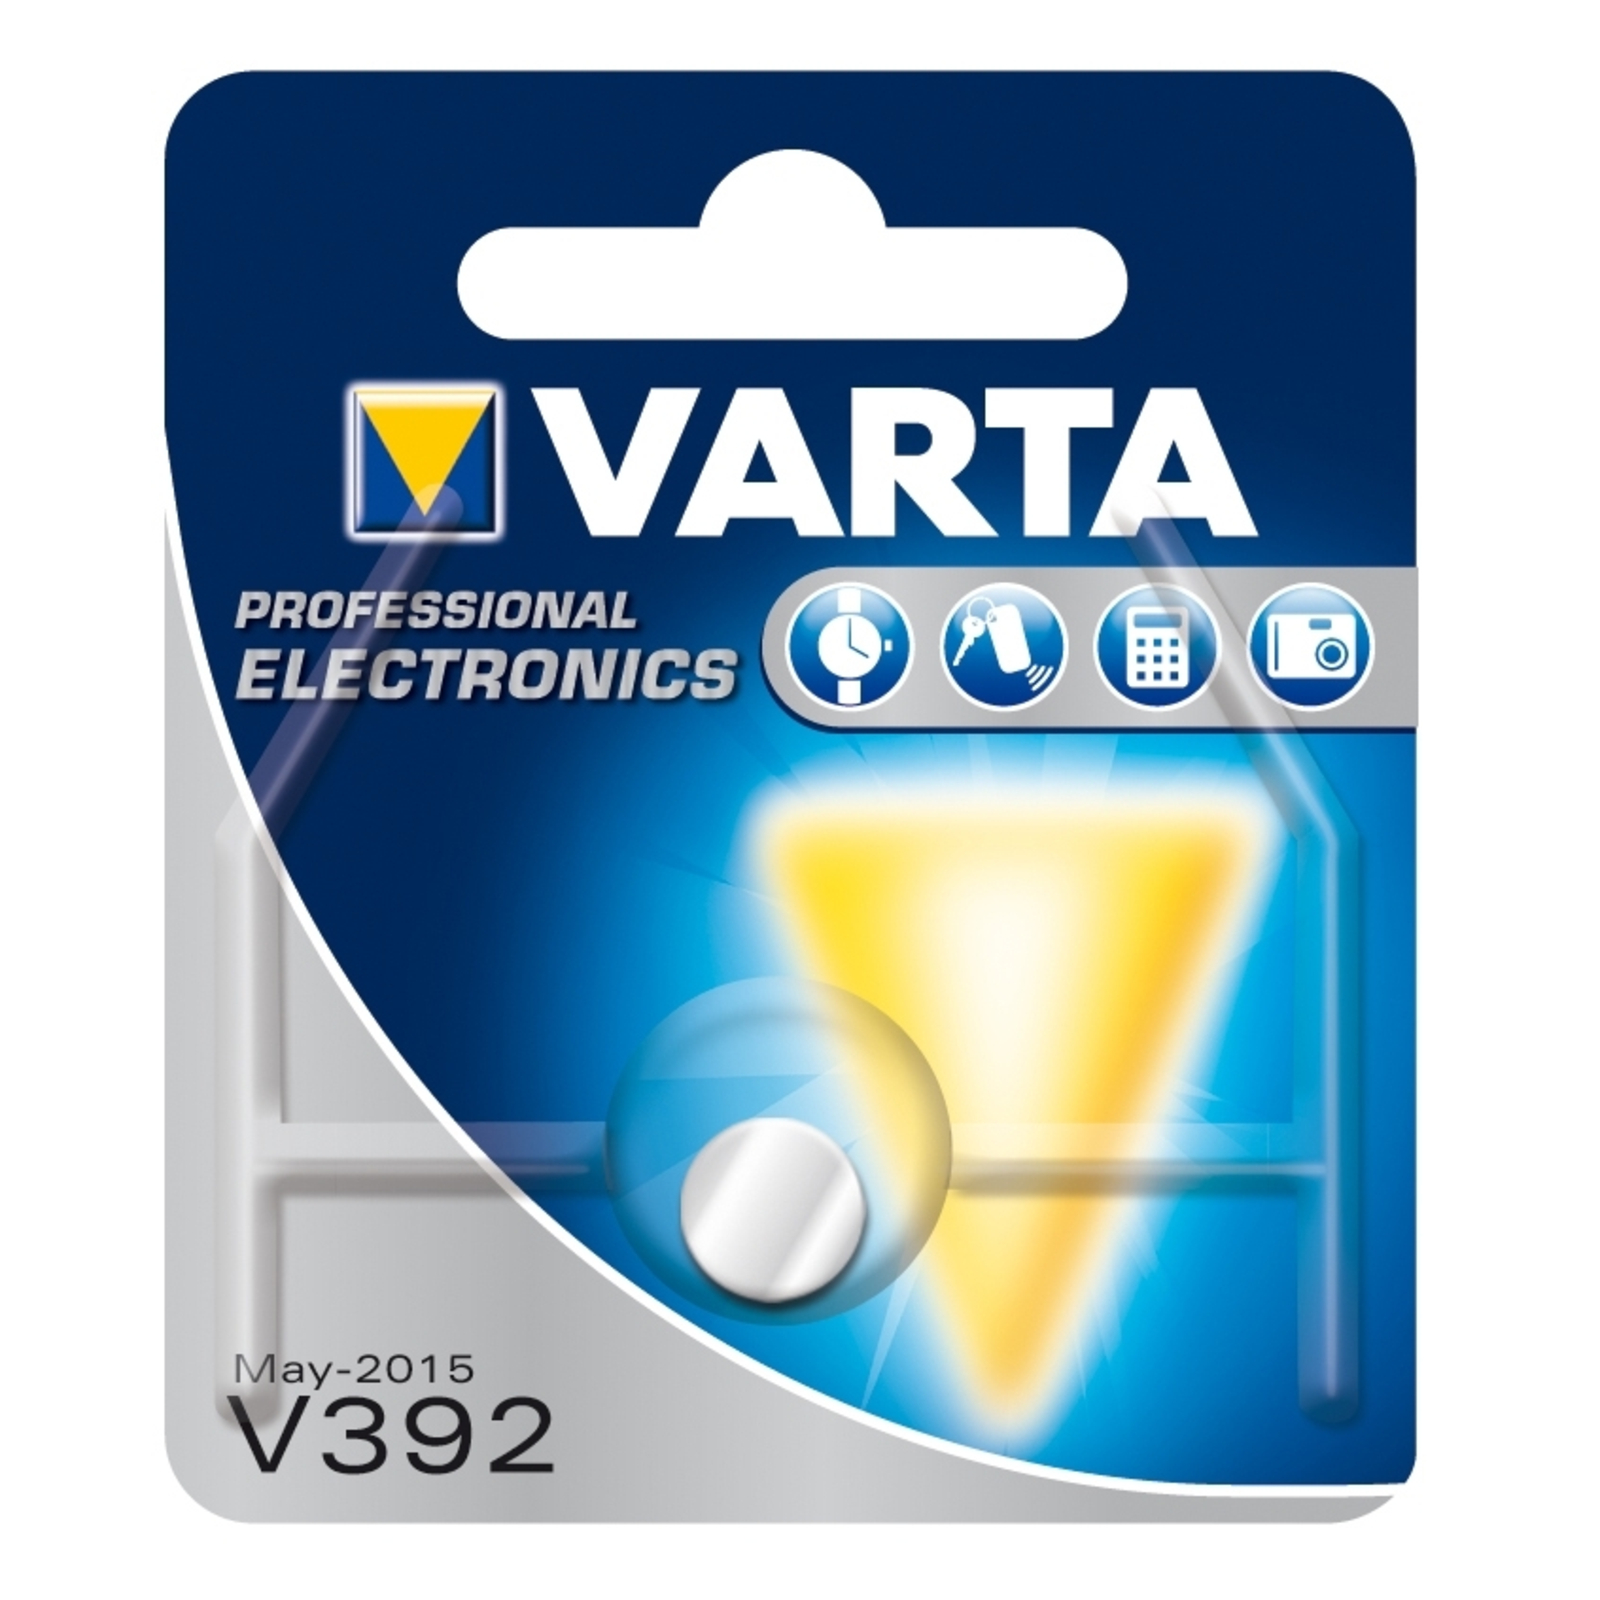 V392 knappcelle fra VARTA